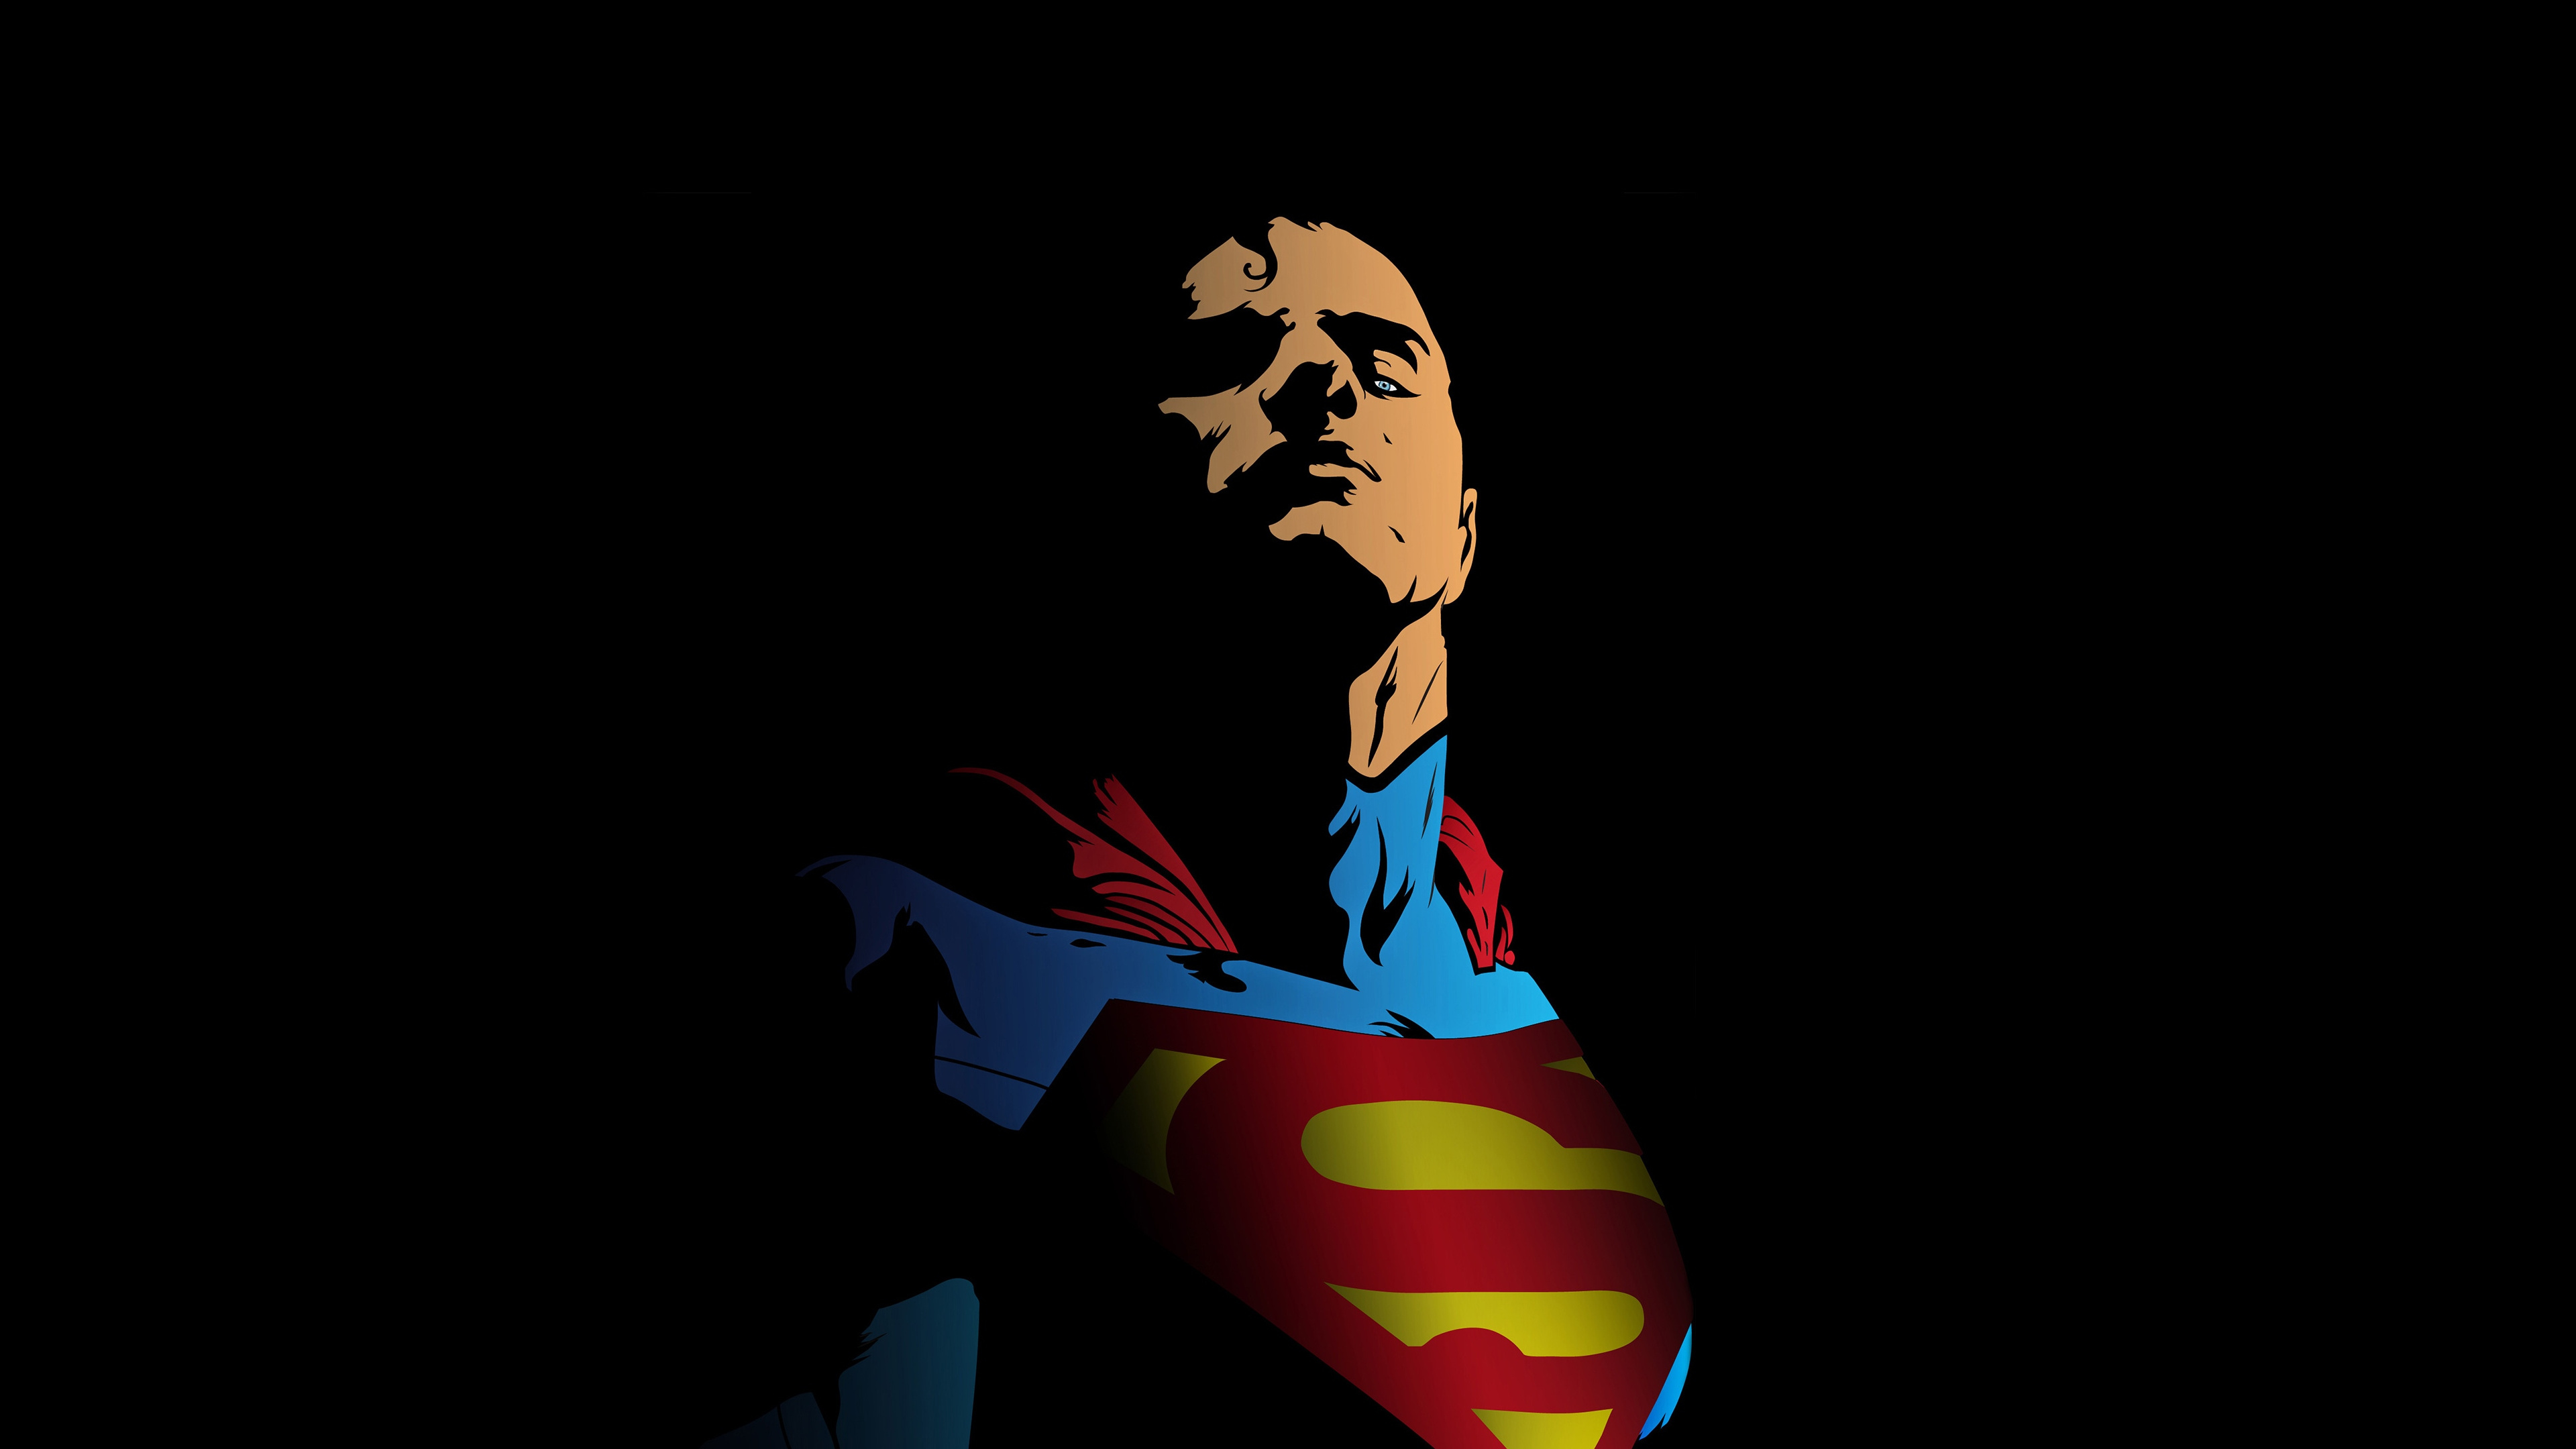 超级英雄, 艺术, 超人的标志, 虚构的人物, 创造性的艺术 壁纸 3840x2160 允许